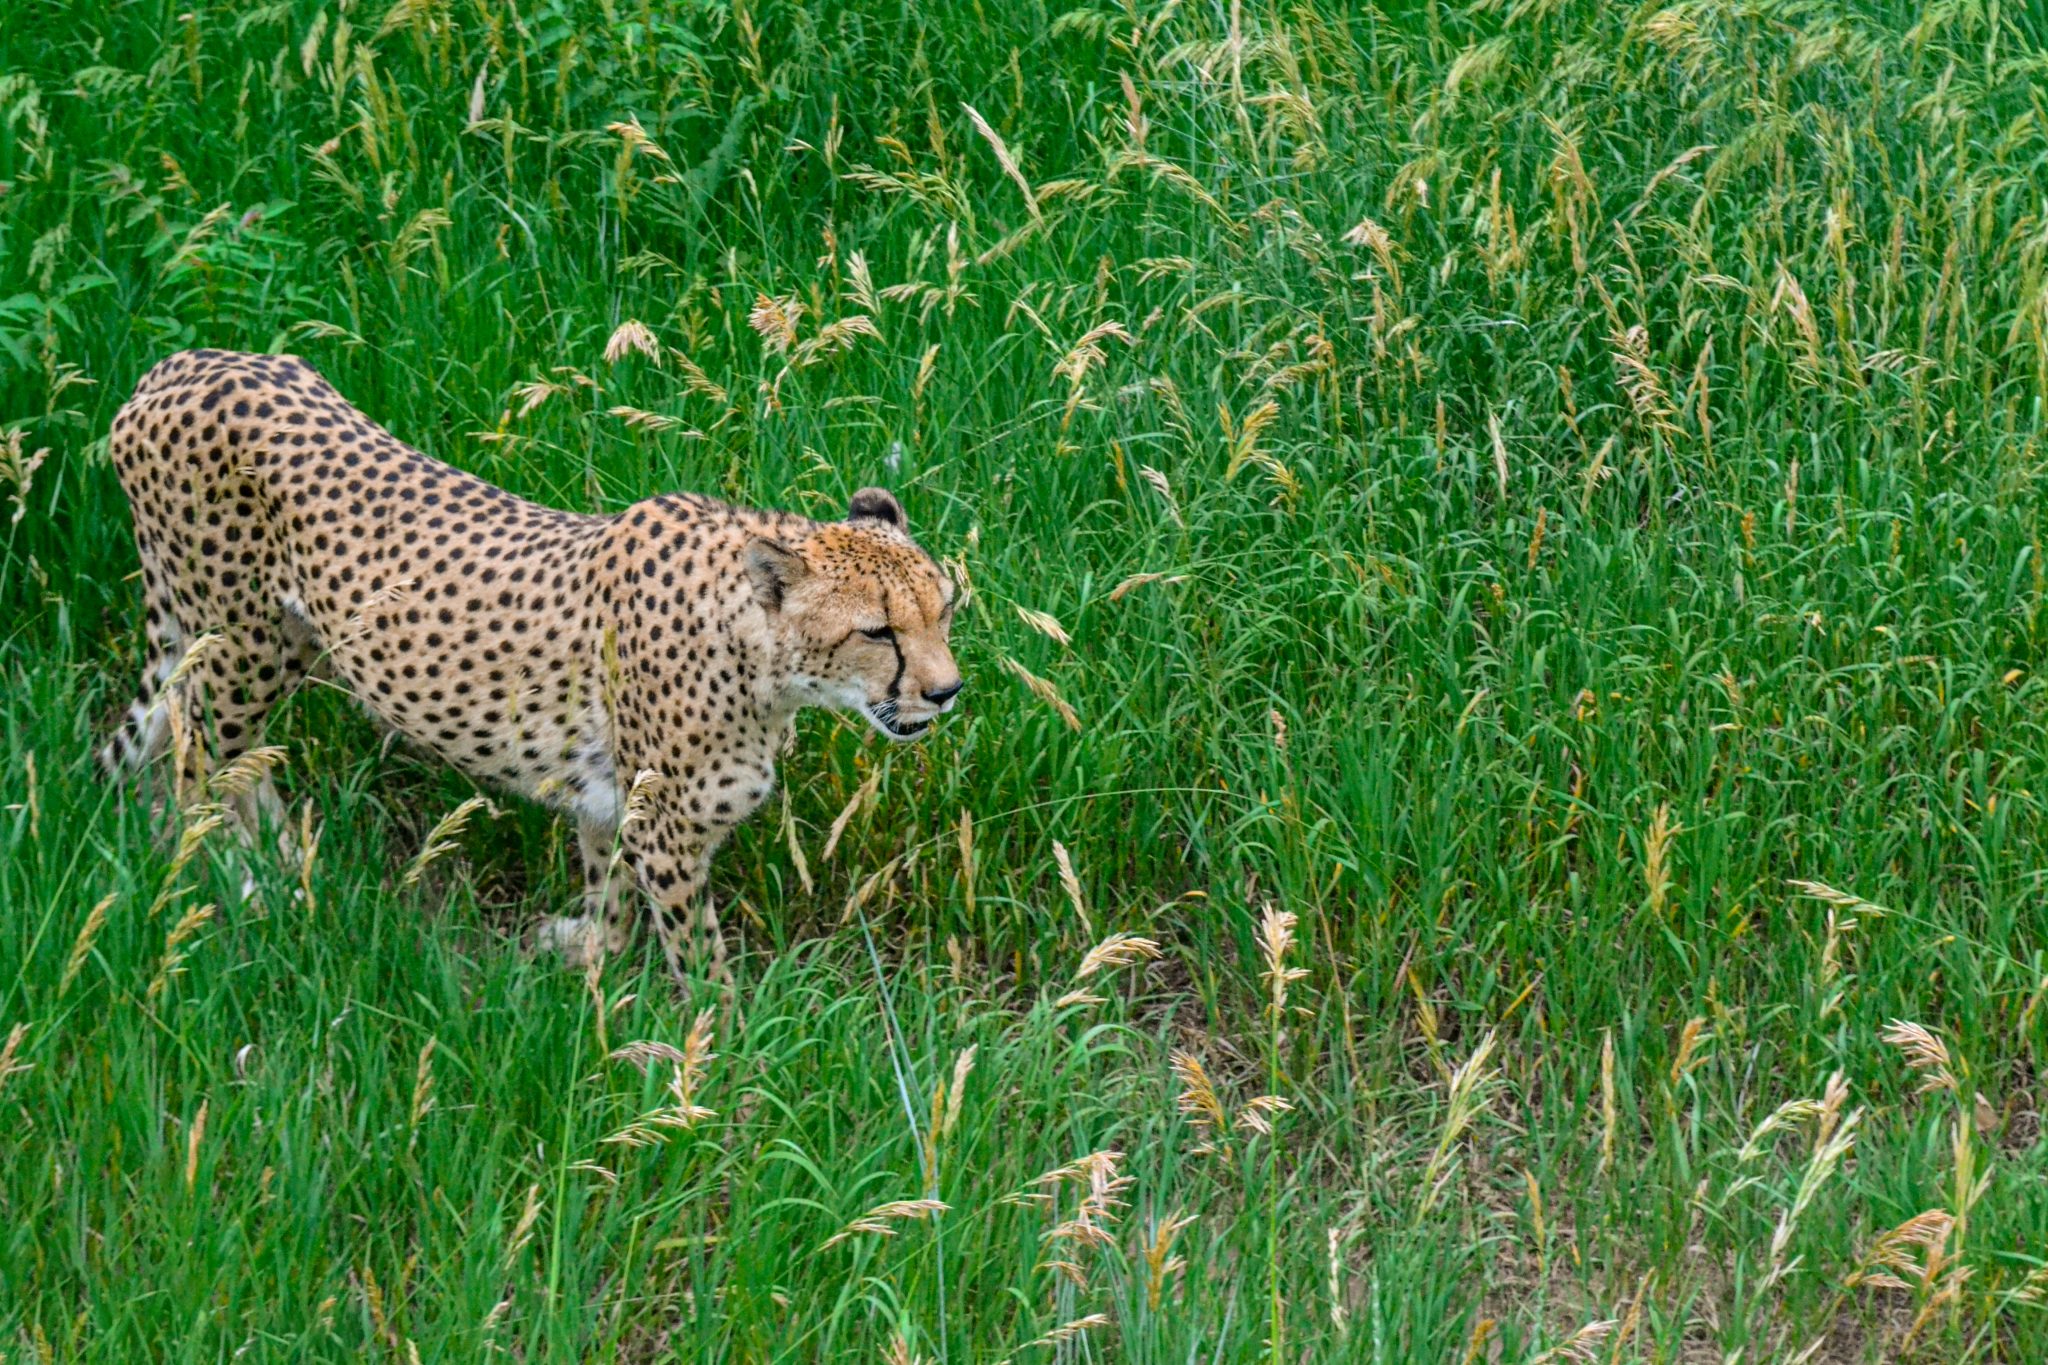 Cheetah walking through tall grass